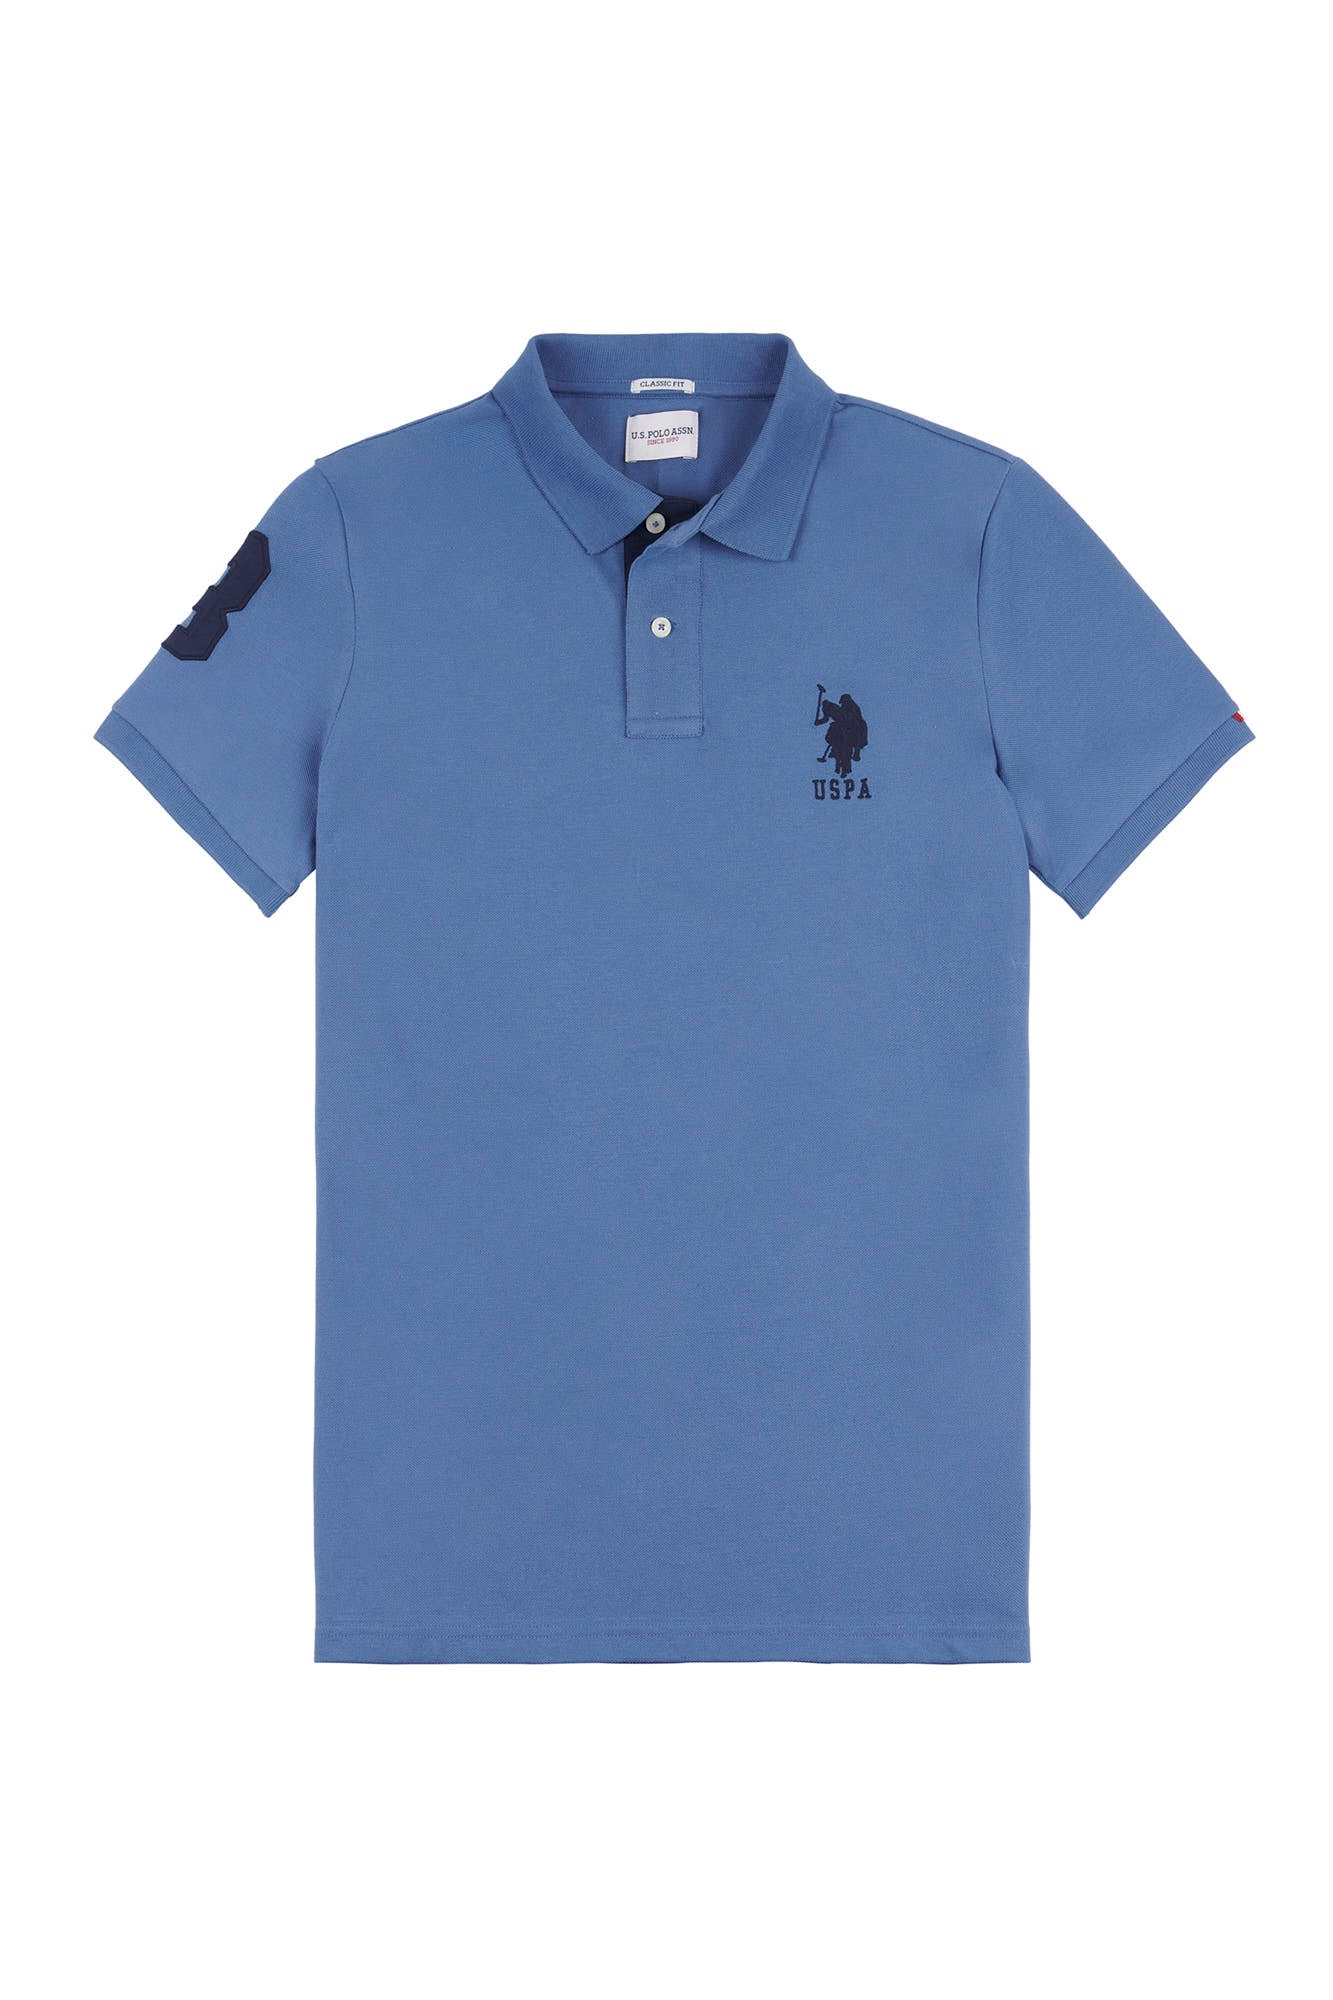 Mens Player 3 Pique Polo Shirt in Blue Horizon